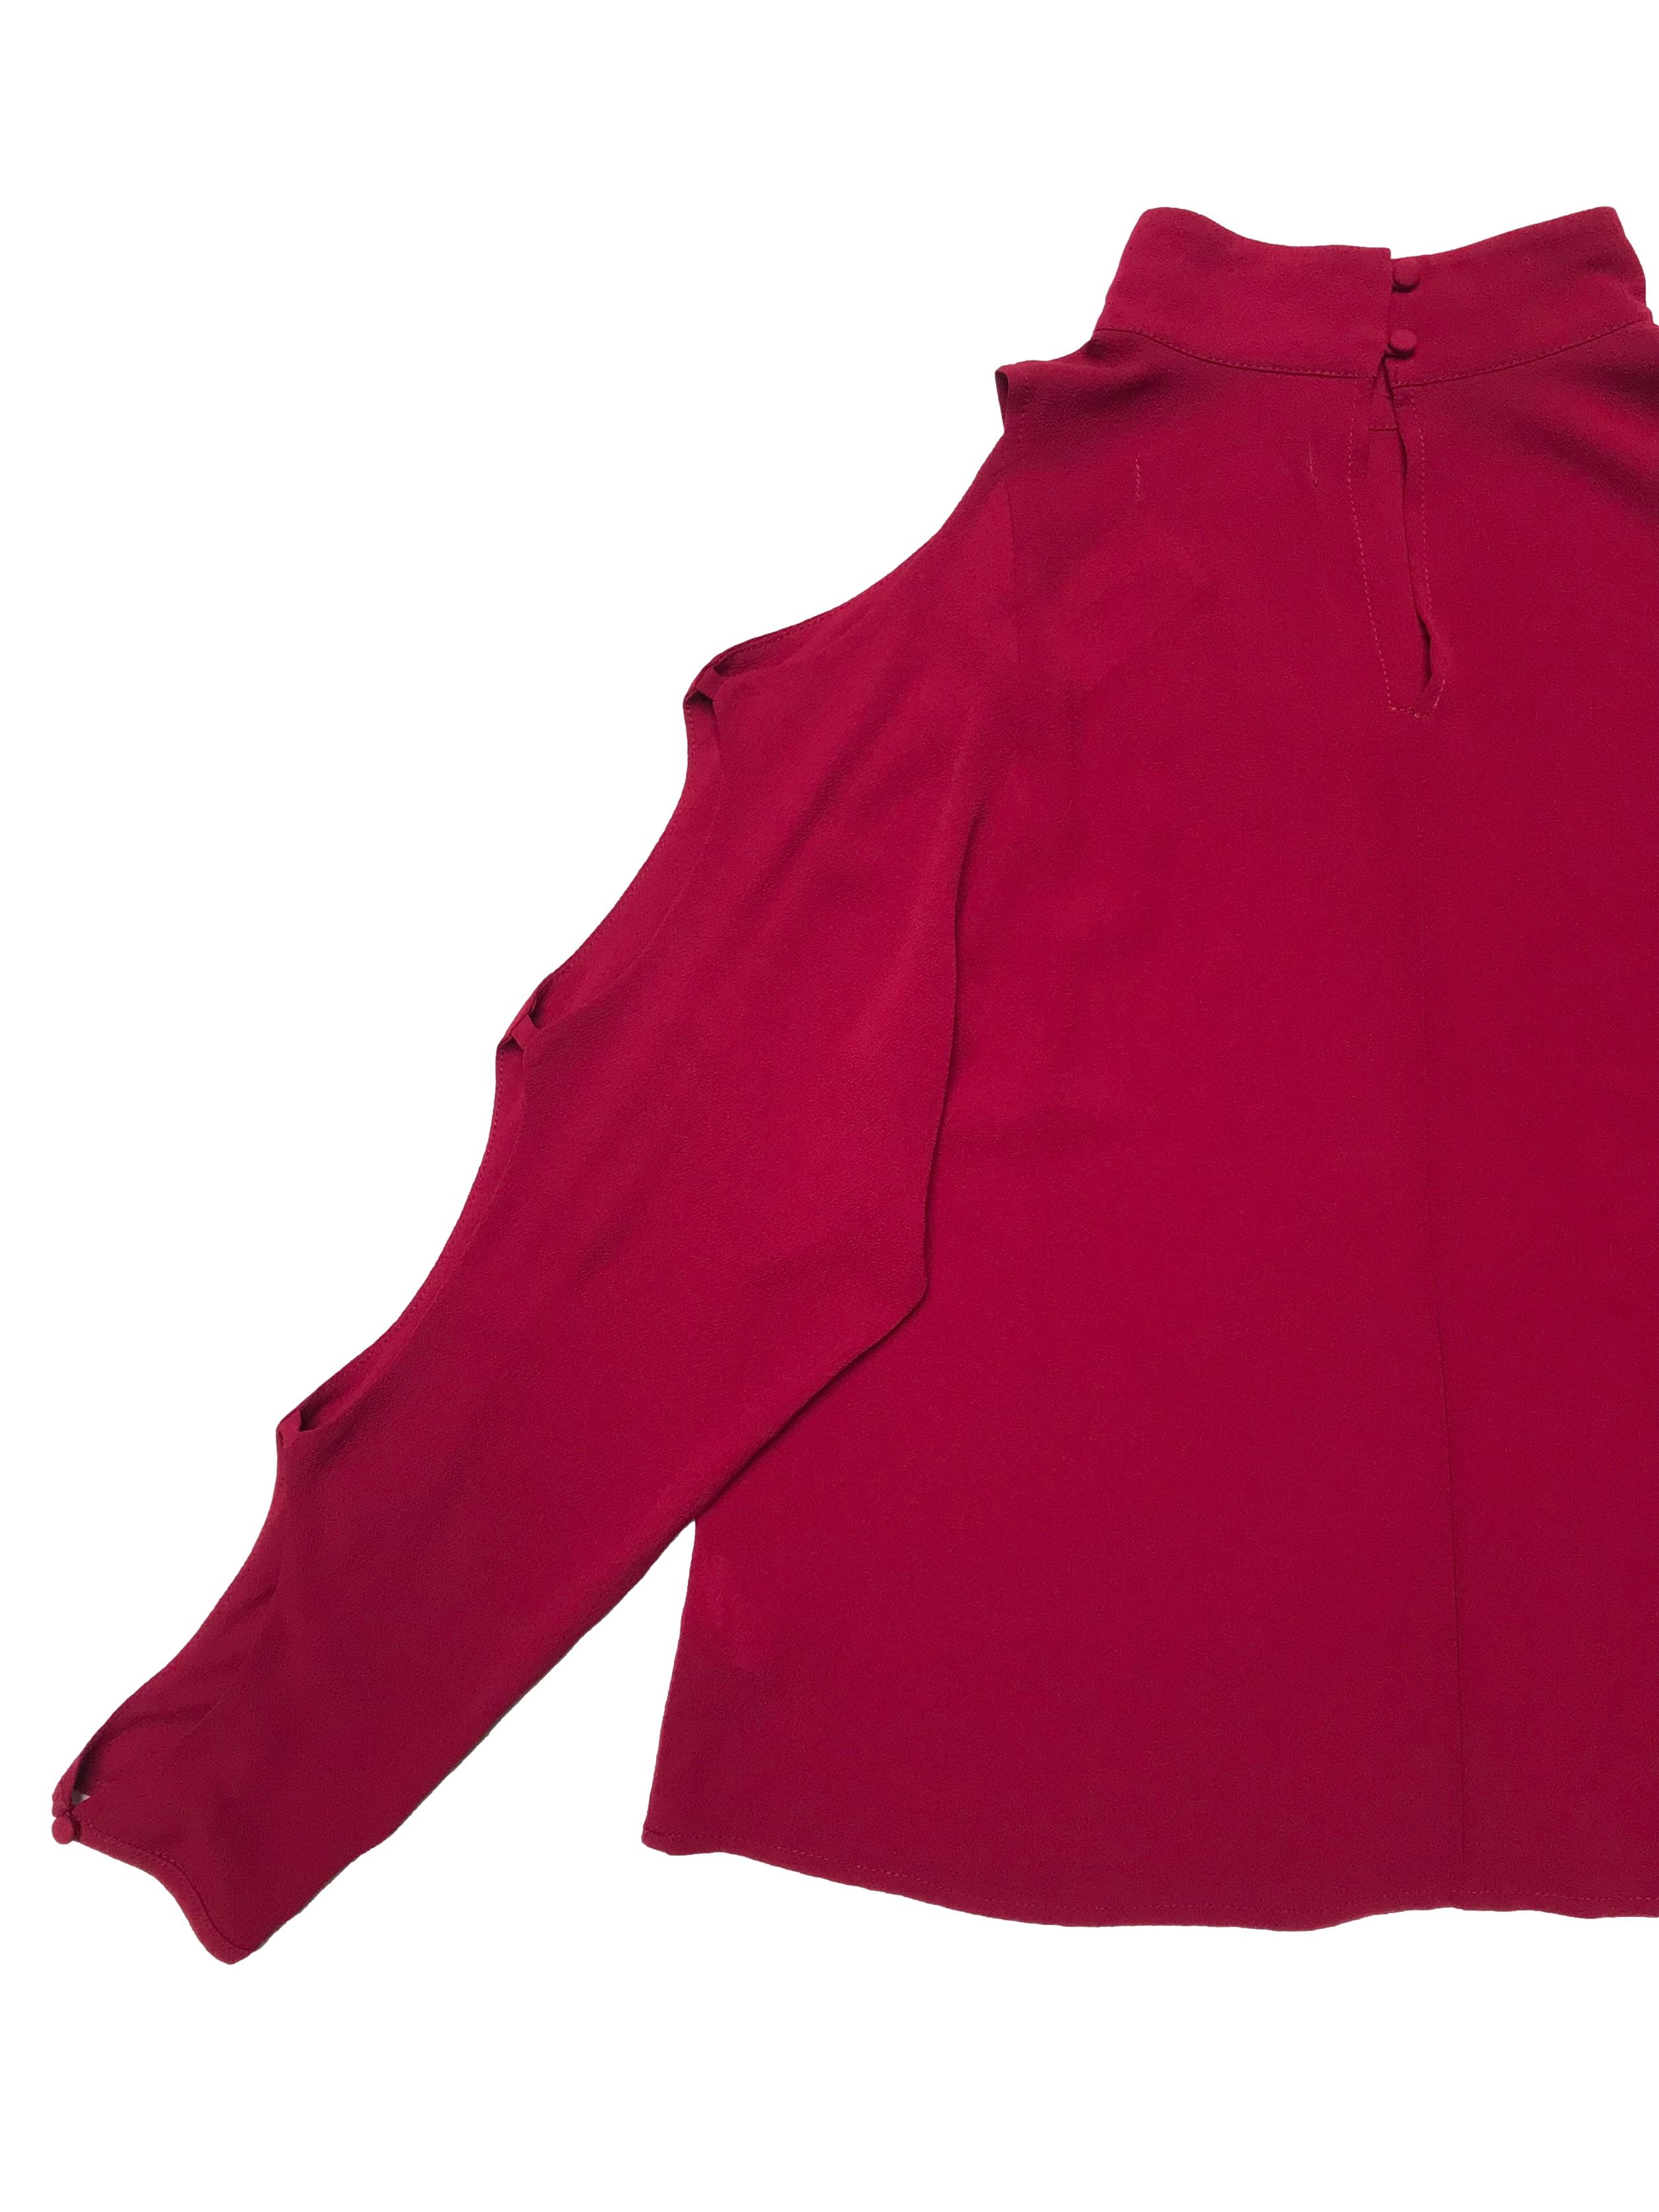 Blusa DO+BE de crepé guinda, cuello alto con botones posteriores, manga larga con aberturas, Ancho 102cm Largo 55cm